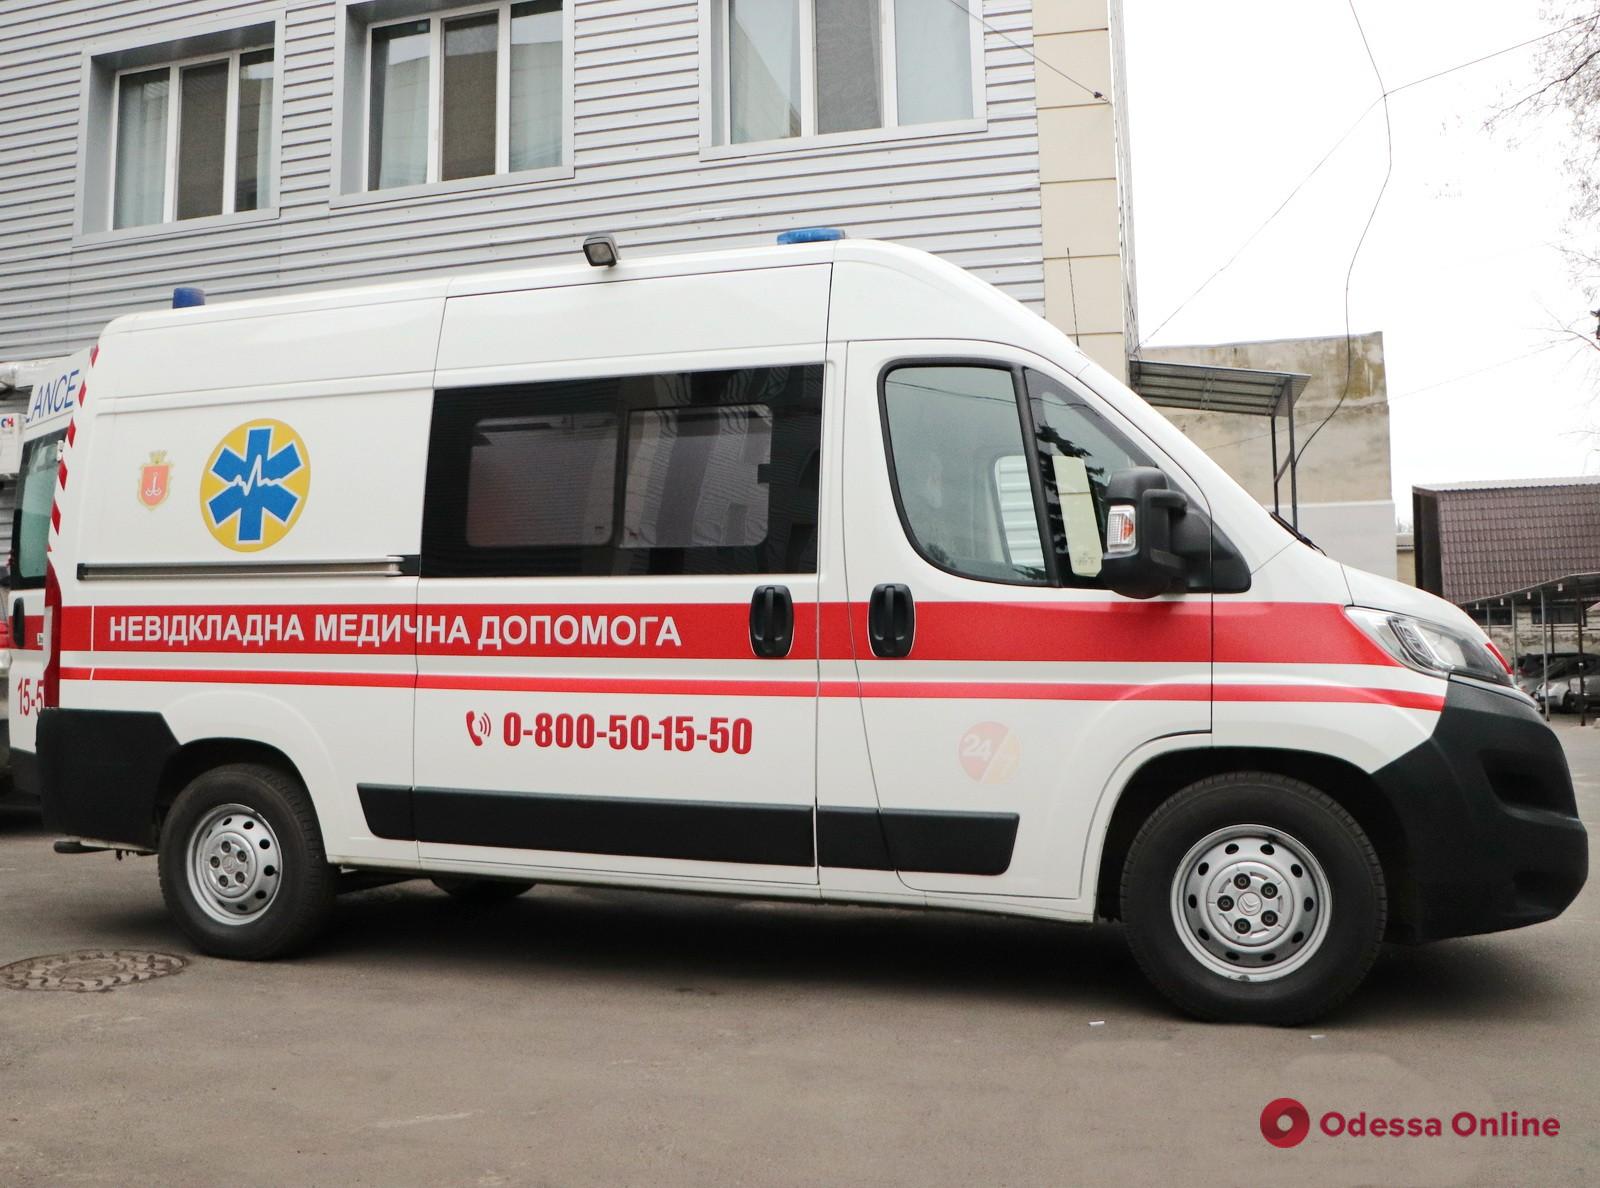 Сотрудники одесского центра неотложной медпомощи более 26 тысяч раз выезжали на вызовы в прошлом году